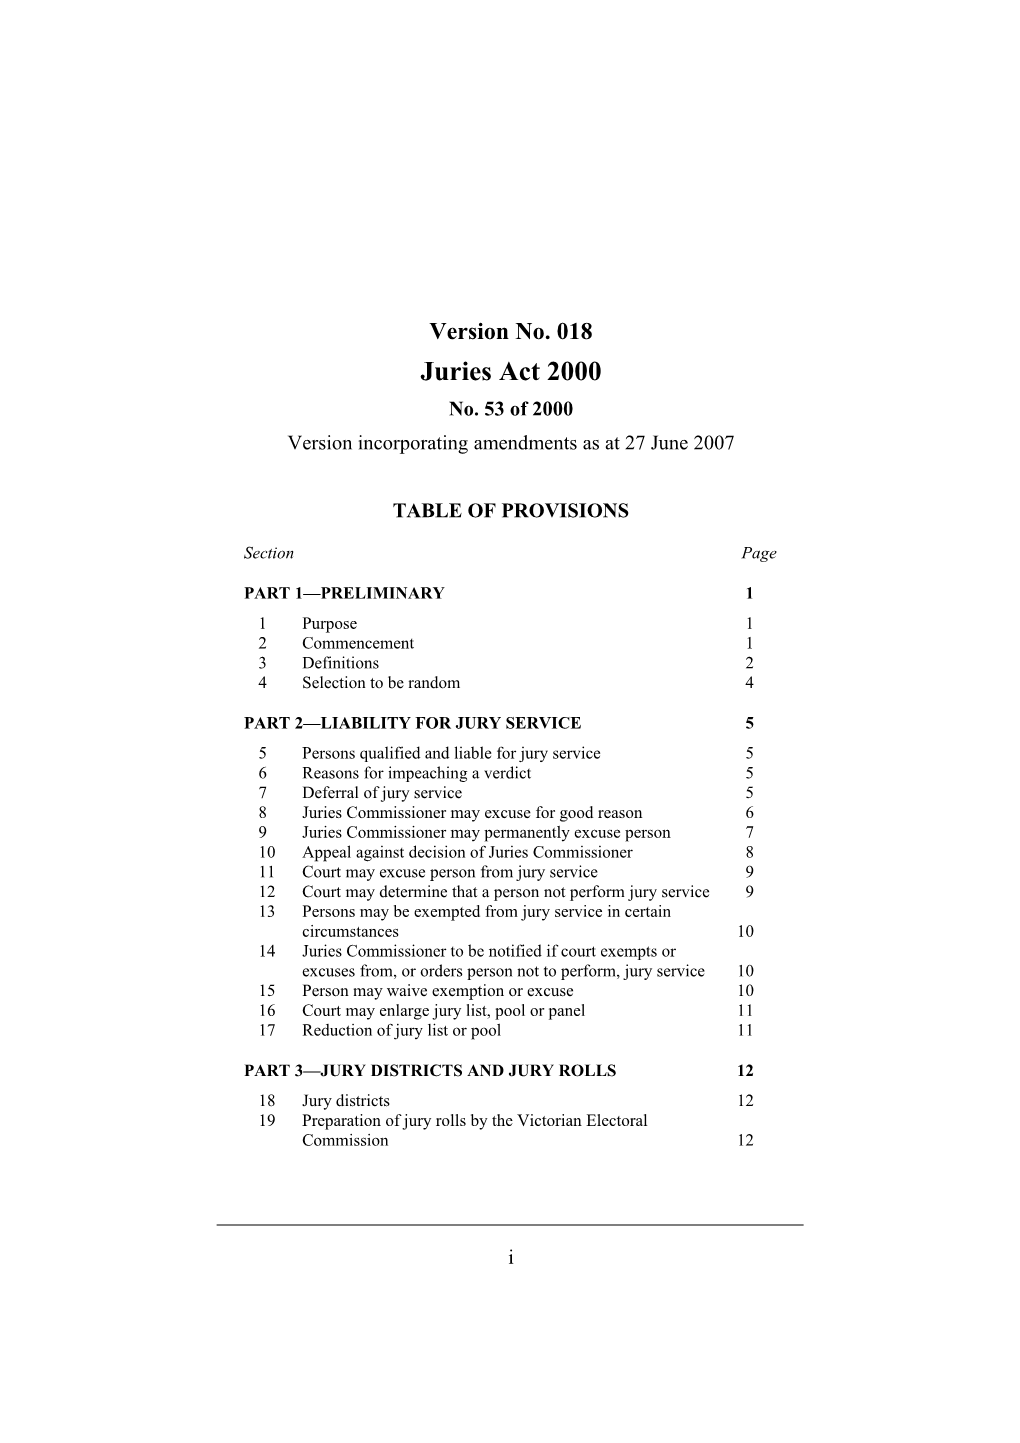 Version Incorporating Amendments As at 27 June 2007